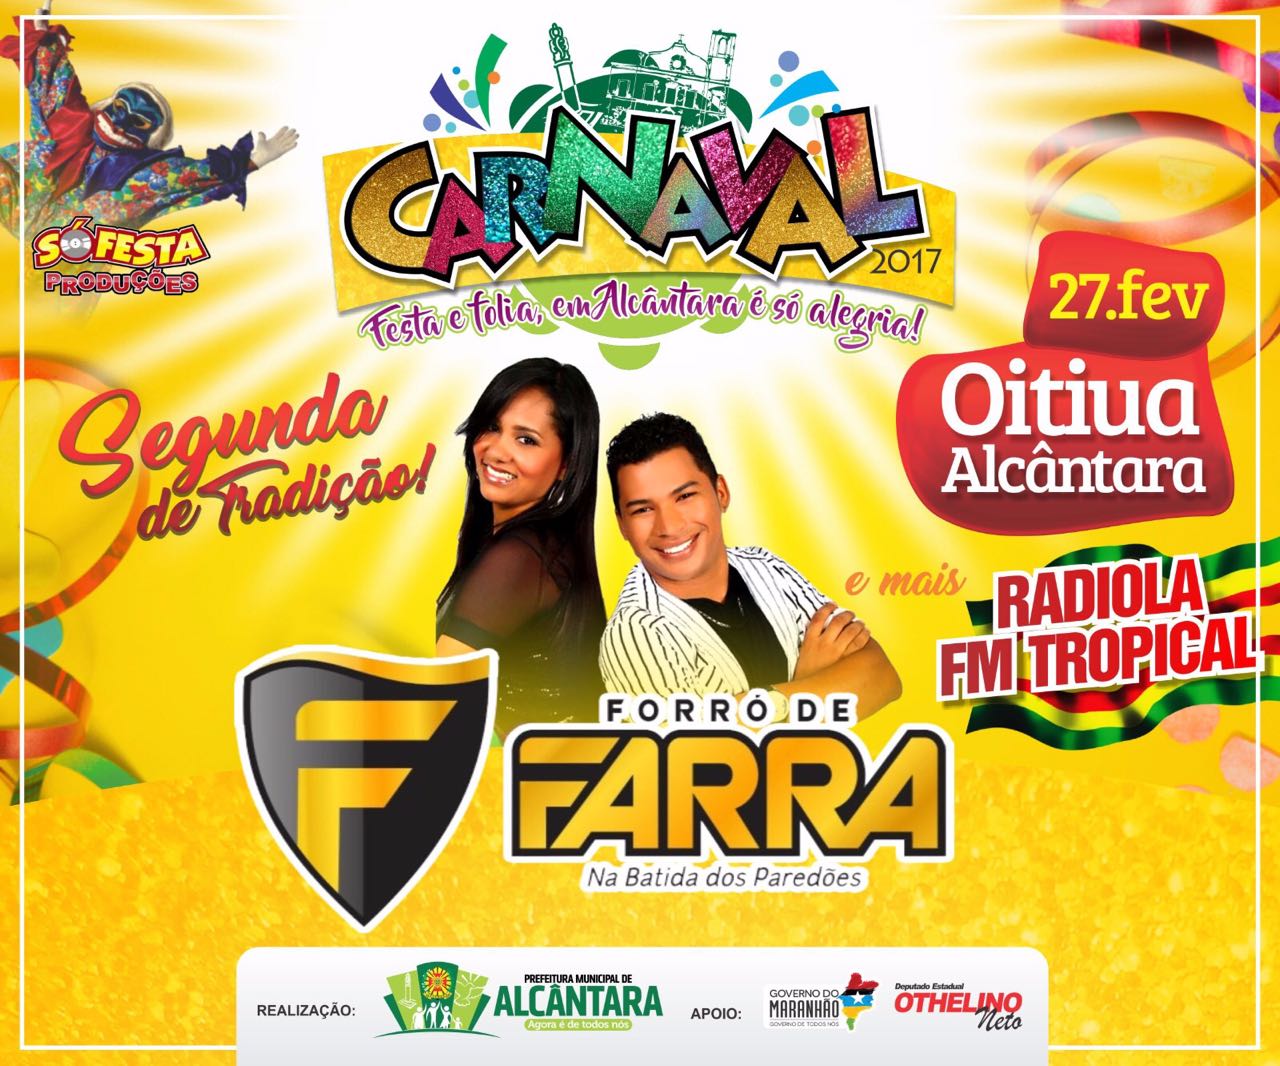 Foto de Programação da segunda feira de Carnaval em Oitiua-Alcântara já está definida pela prefeitura